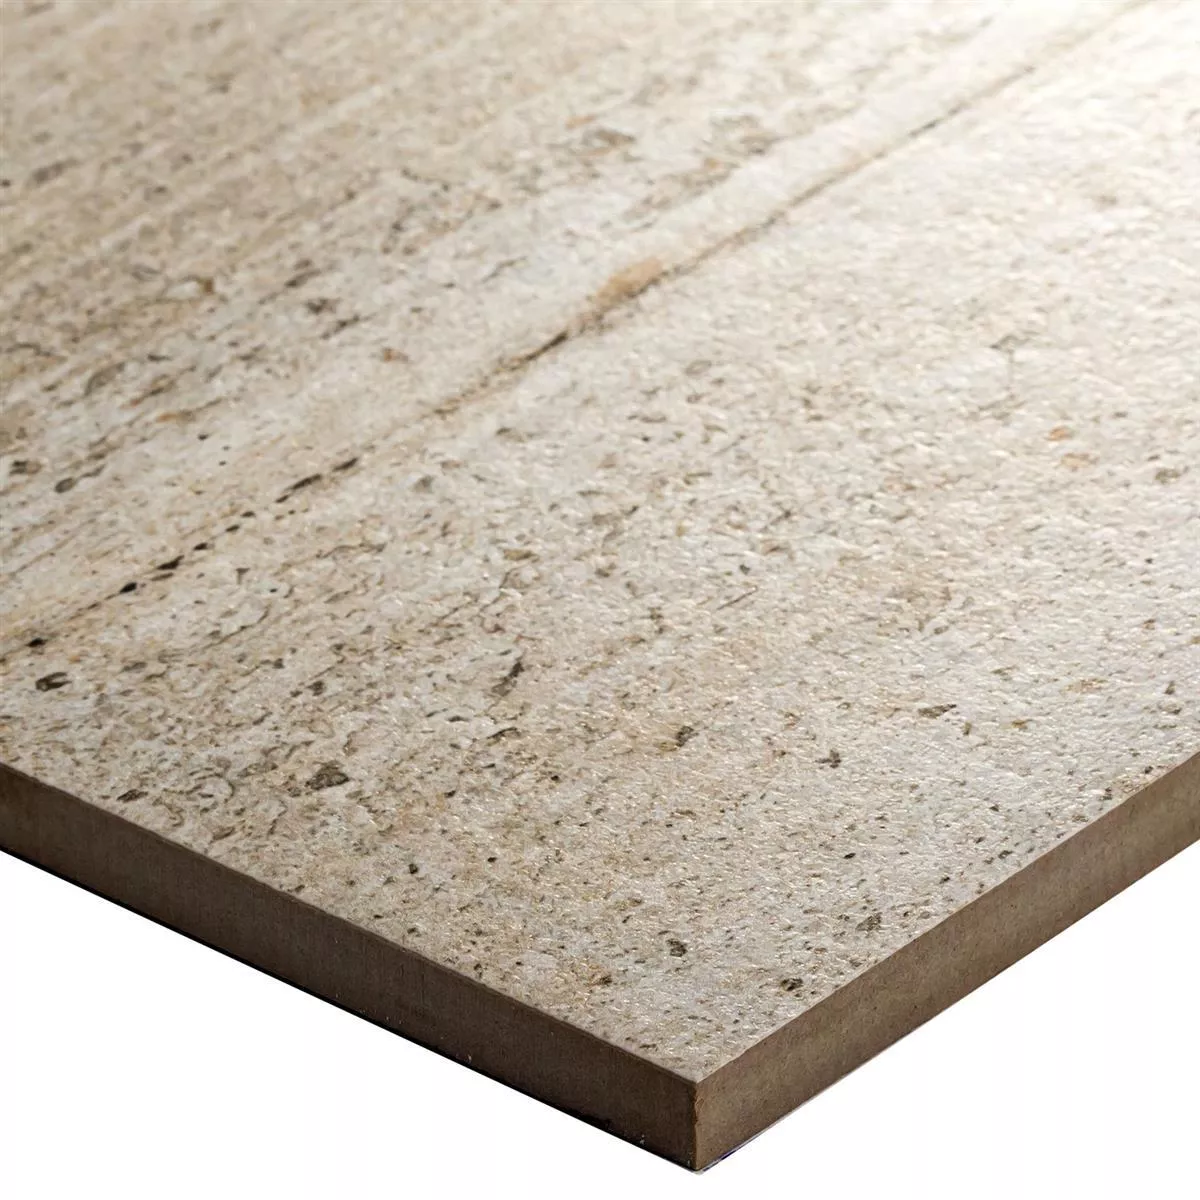 Sample Floor Tiles Cement Optic Sambuco White 30x90cm